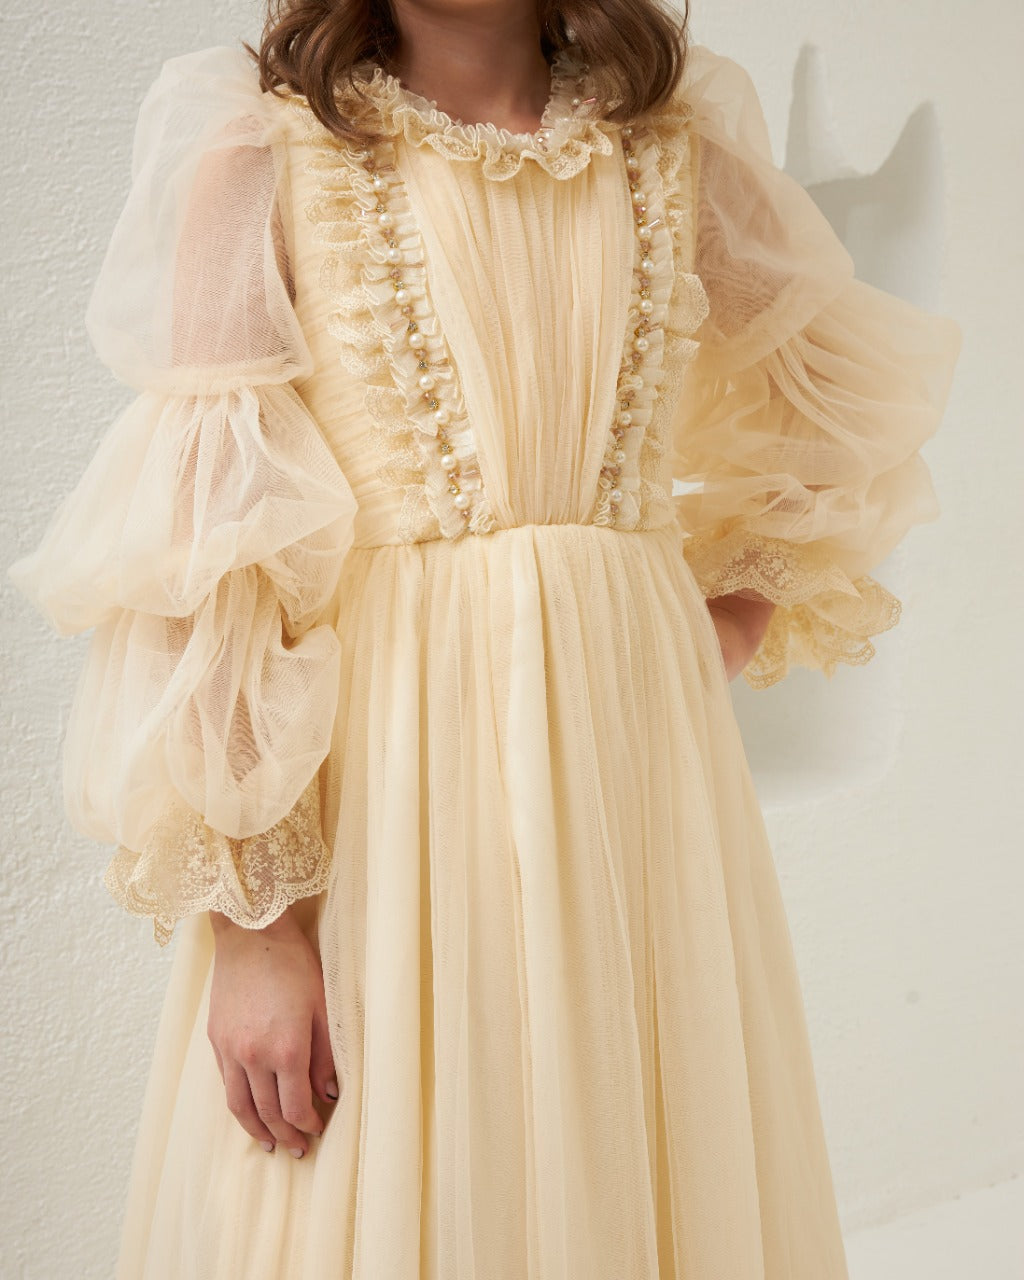 Pretty Lovely Elegant Ivory Dress 2309